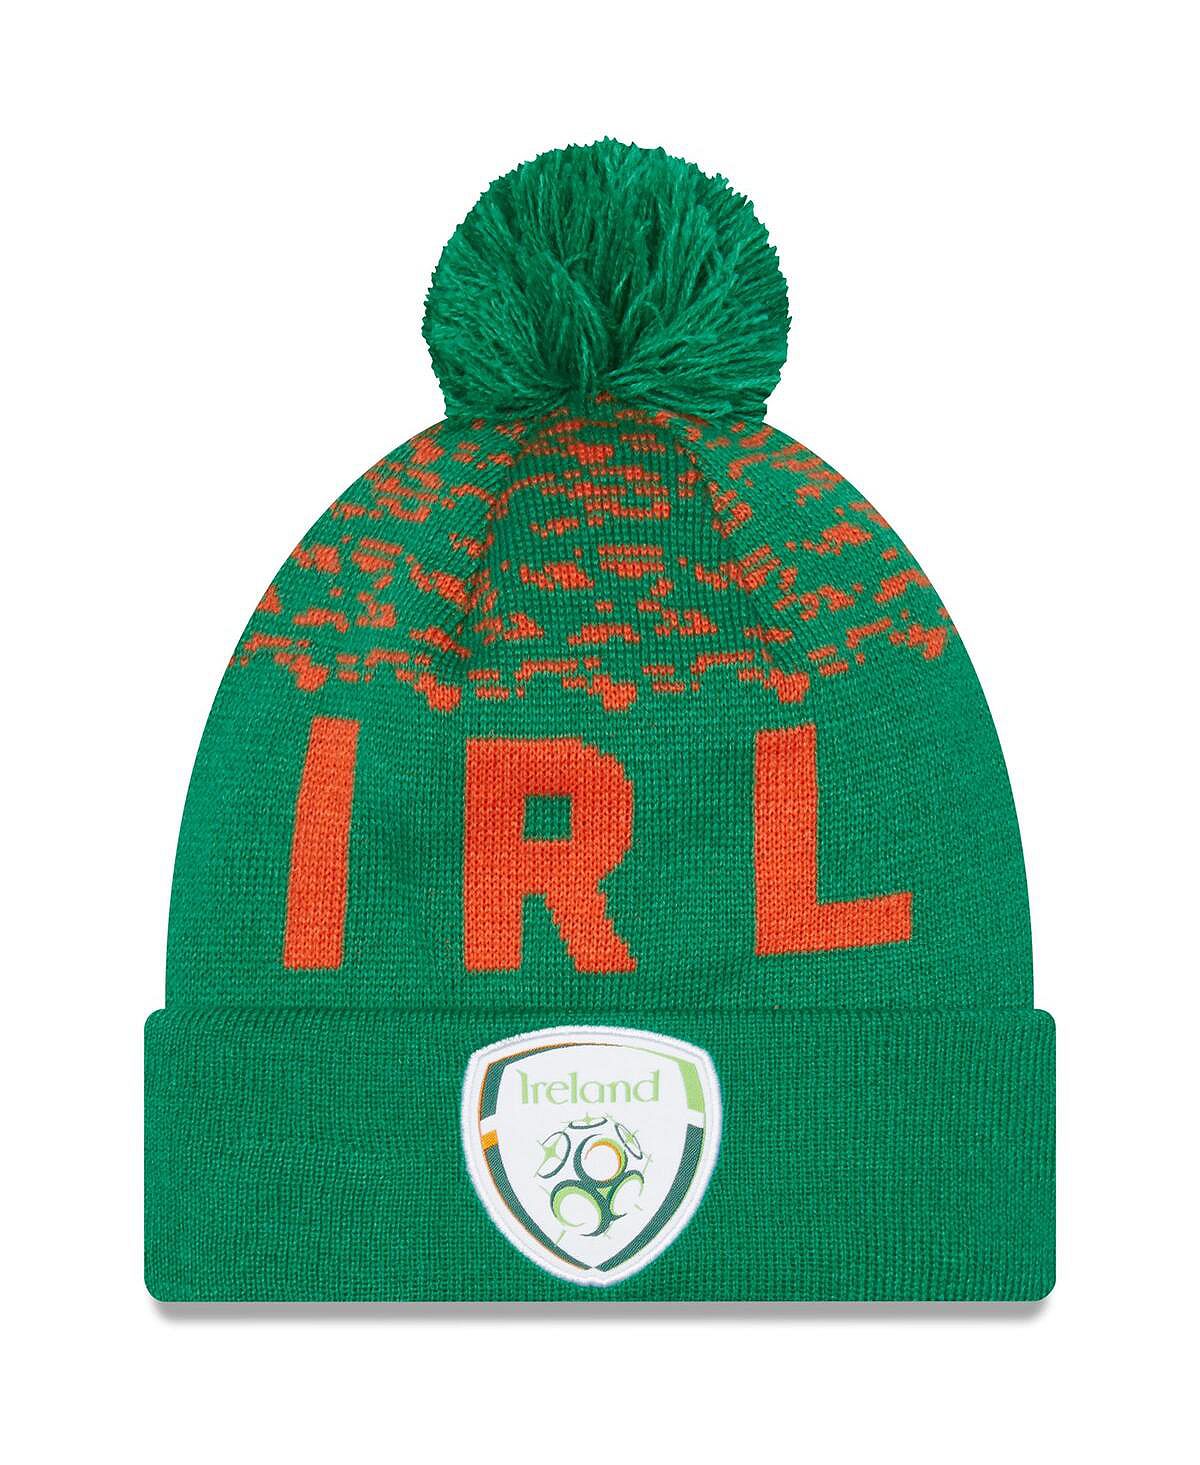 Мужская зеленая вязаная шапка с манжетами и помпоном, сборная Ирландии New Era